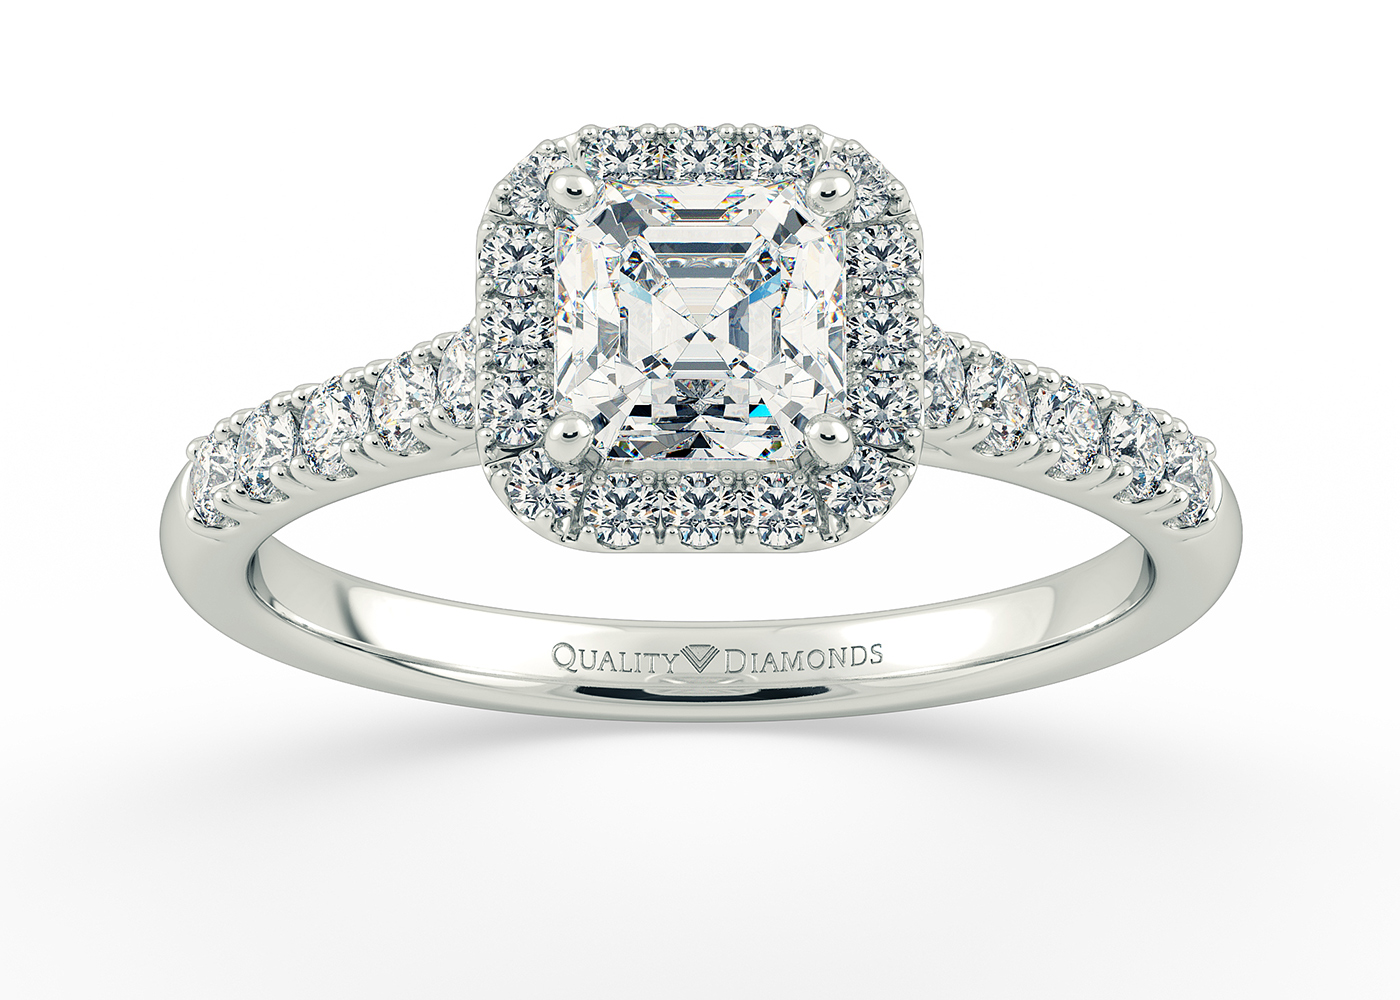 One Carat Asscher Halo Diamond Ring in Platinum 950